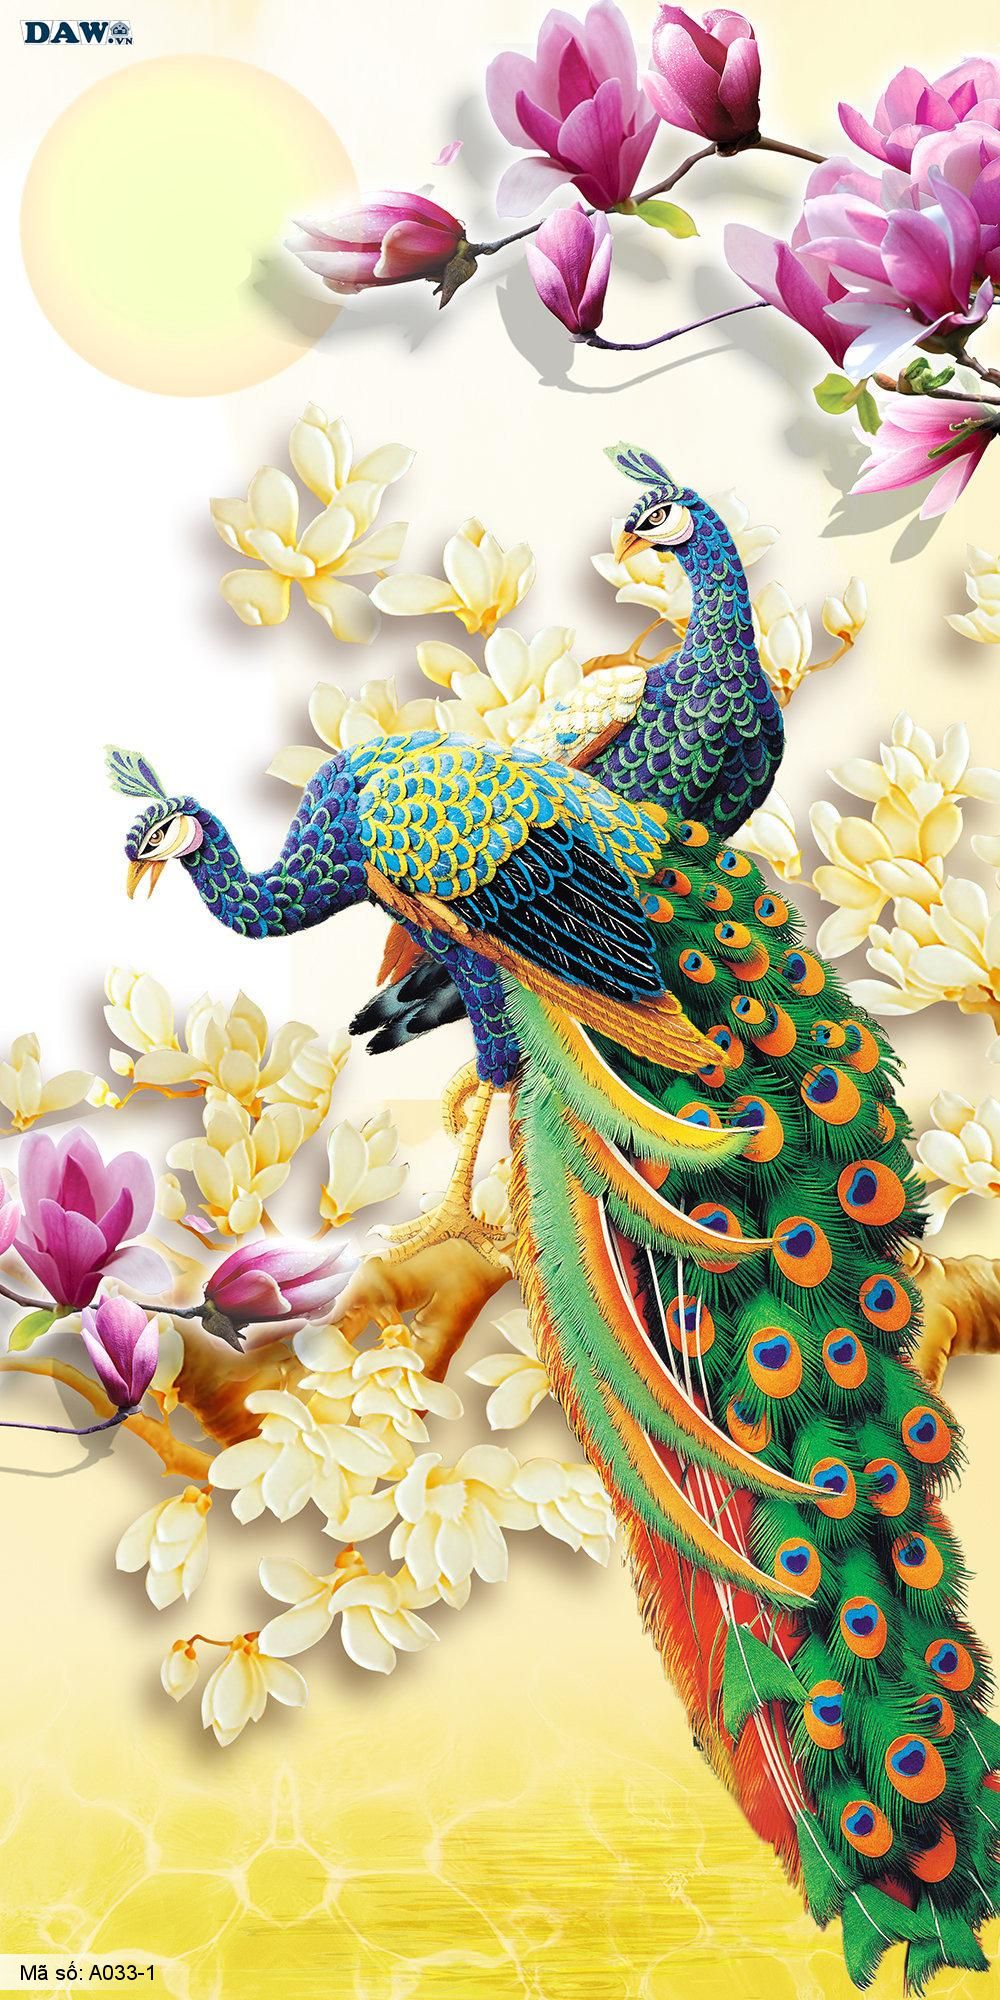 Tranh dán tường 3D, tranh dán tường Hàn Quốc, tranh ngọc A033-1, Hoa văn, bình hoa, cành hoa, chim 3D, tranh khổ ngang